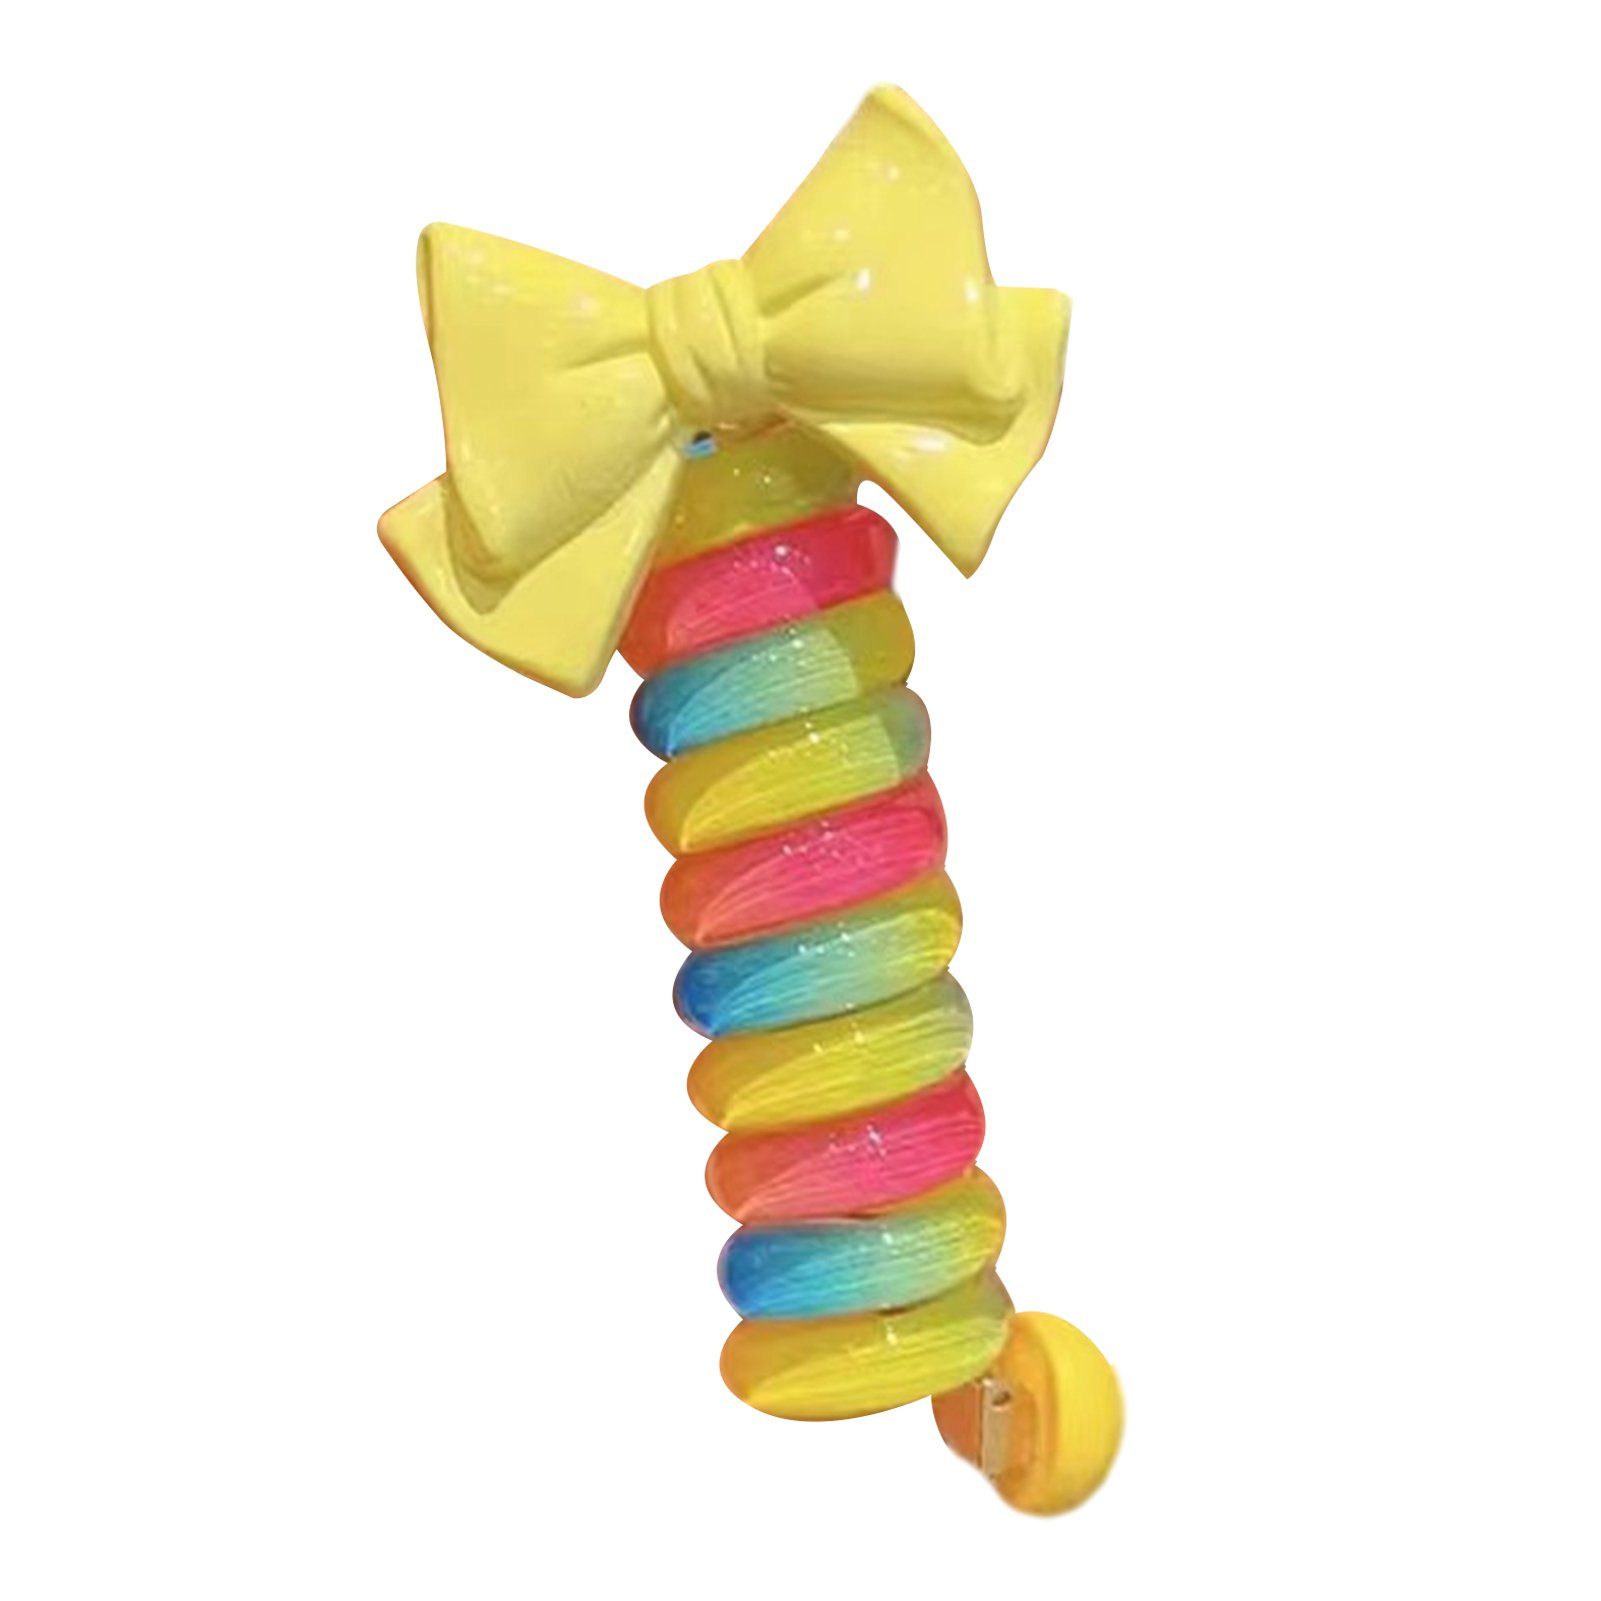 Blusmart Spiral-Haargummi Mädchen Bunte Schleife Telefonkabel Haarbänder Wiederverwendbare DIY, Spiral-Haargummi yellow bow